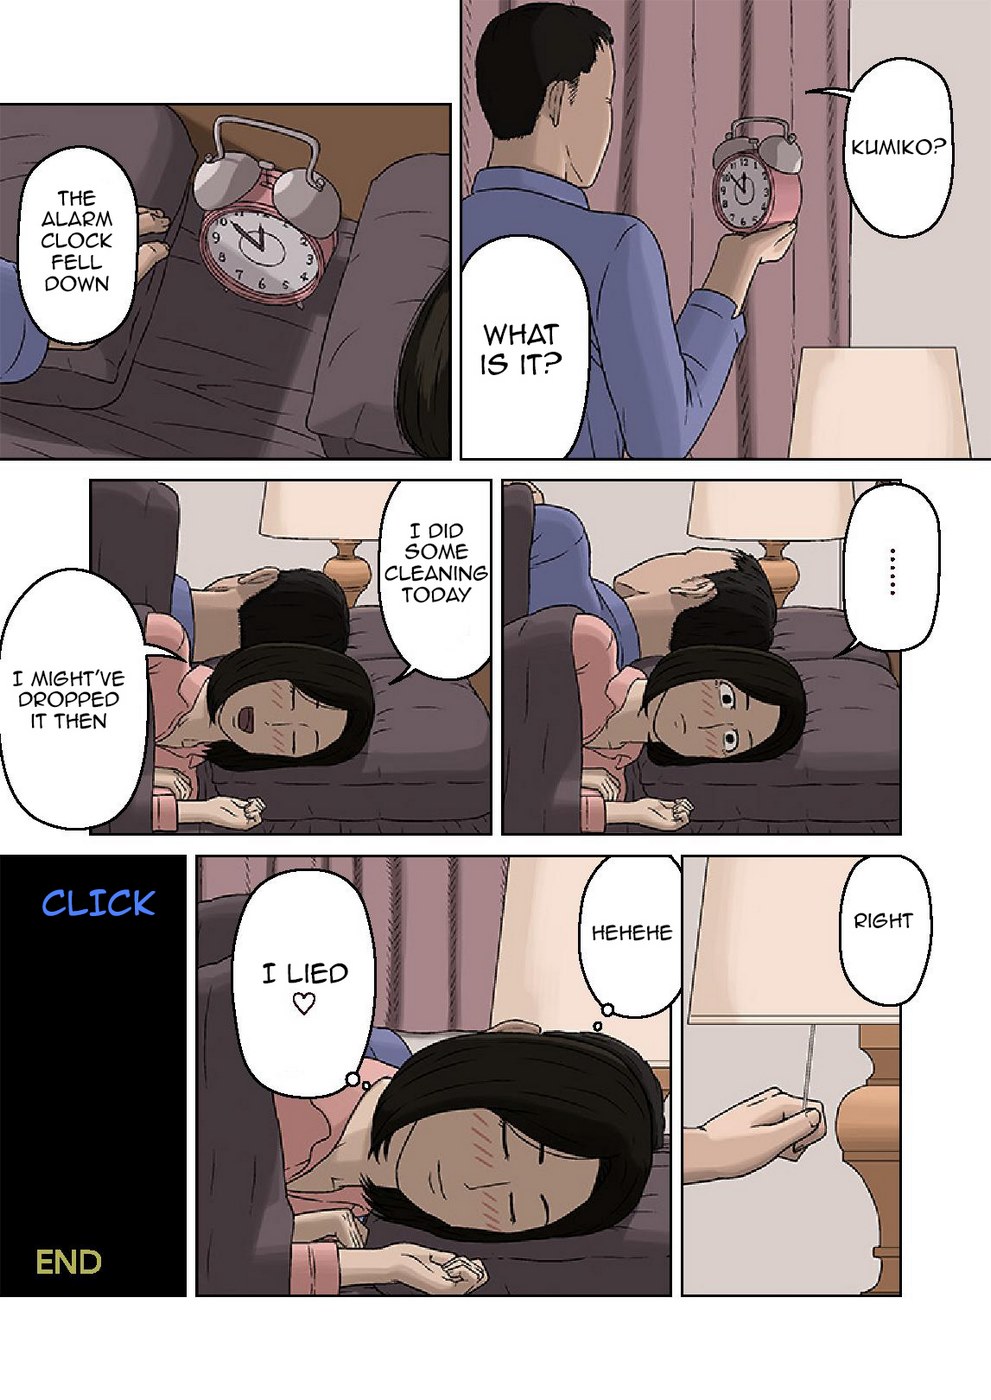 Kumiko And Her Naughty Son - part 2